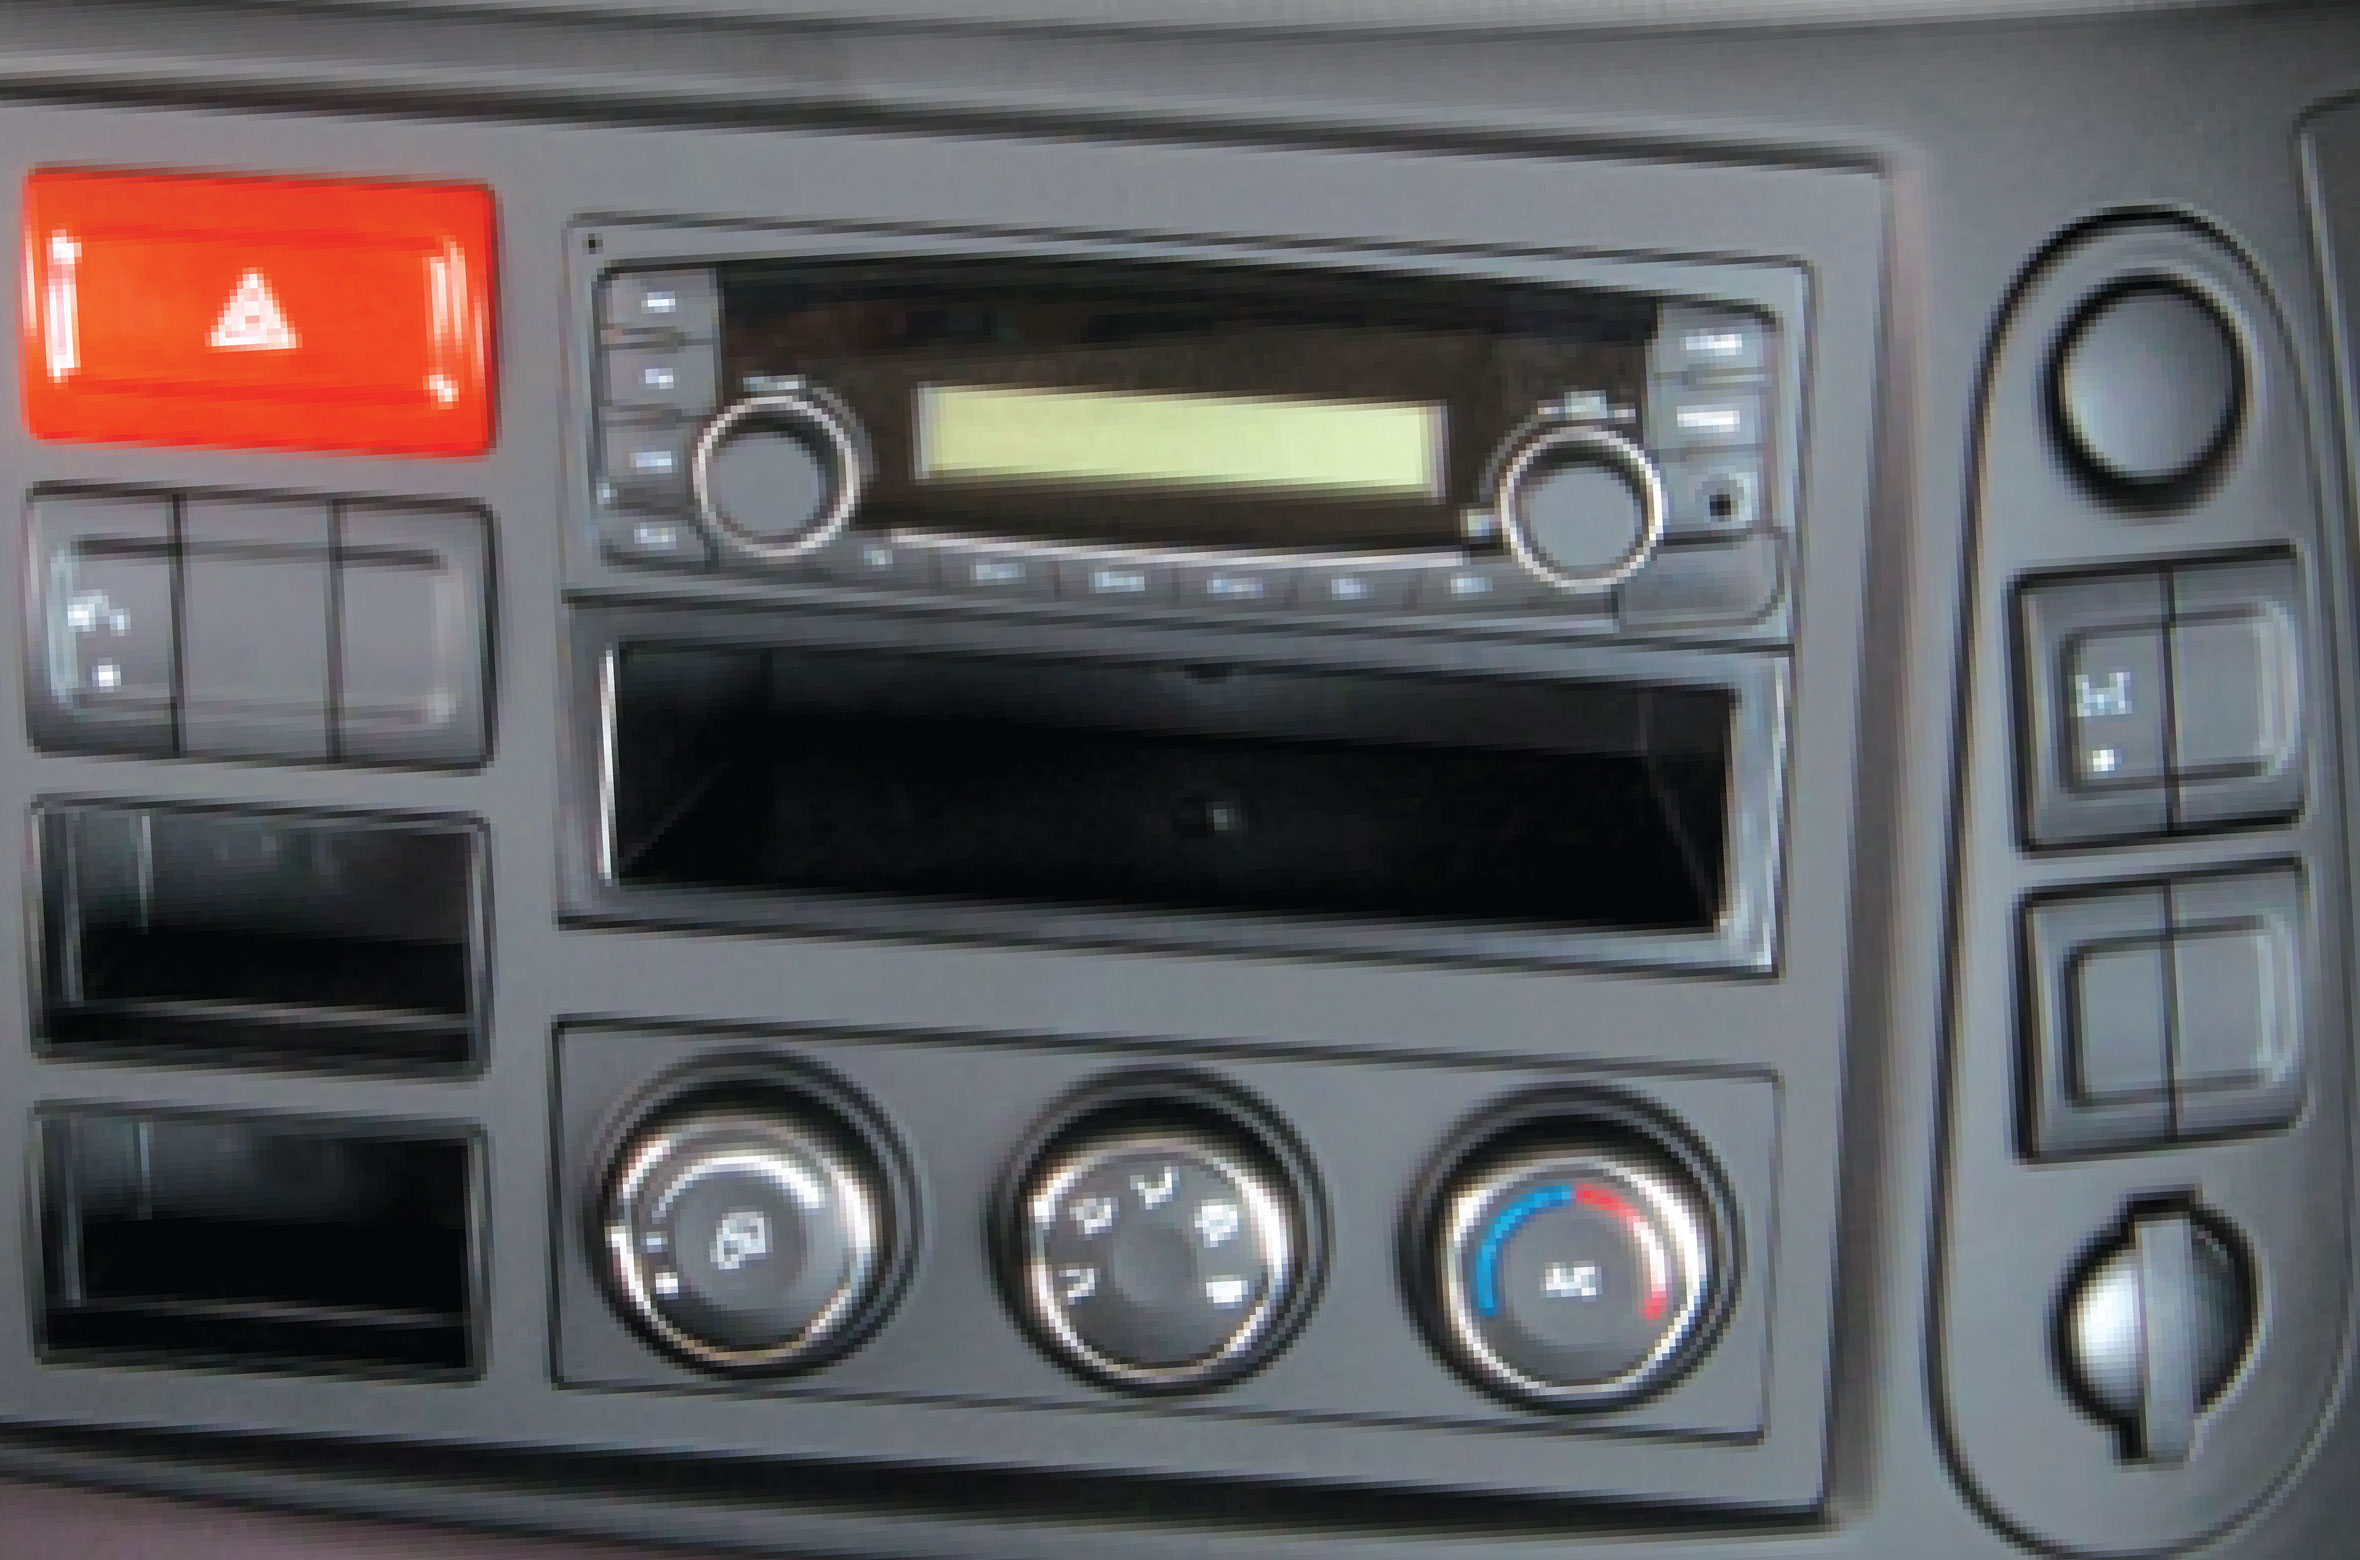  Radio, máy nghe nhạc và cụm điều khiển hệ thống điều hòa